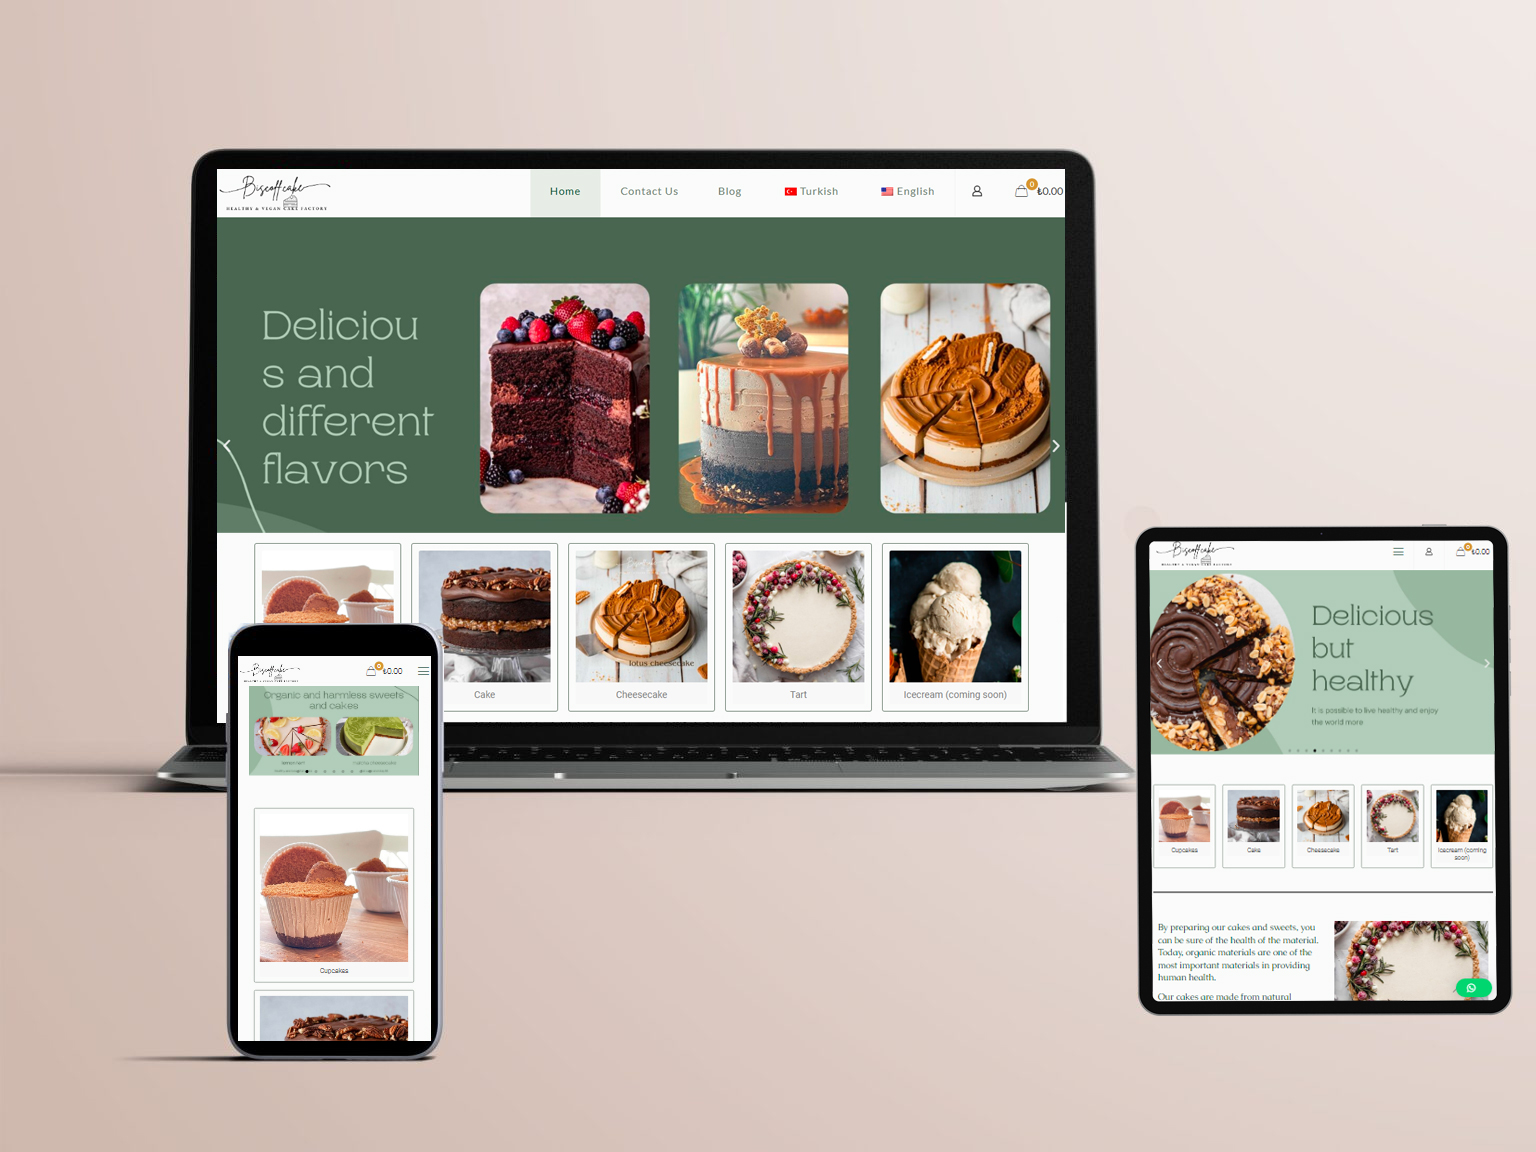 سایت فروش بیسکوئیت و کیک ساخته شده توسط رایا توس